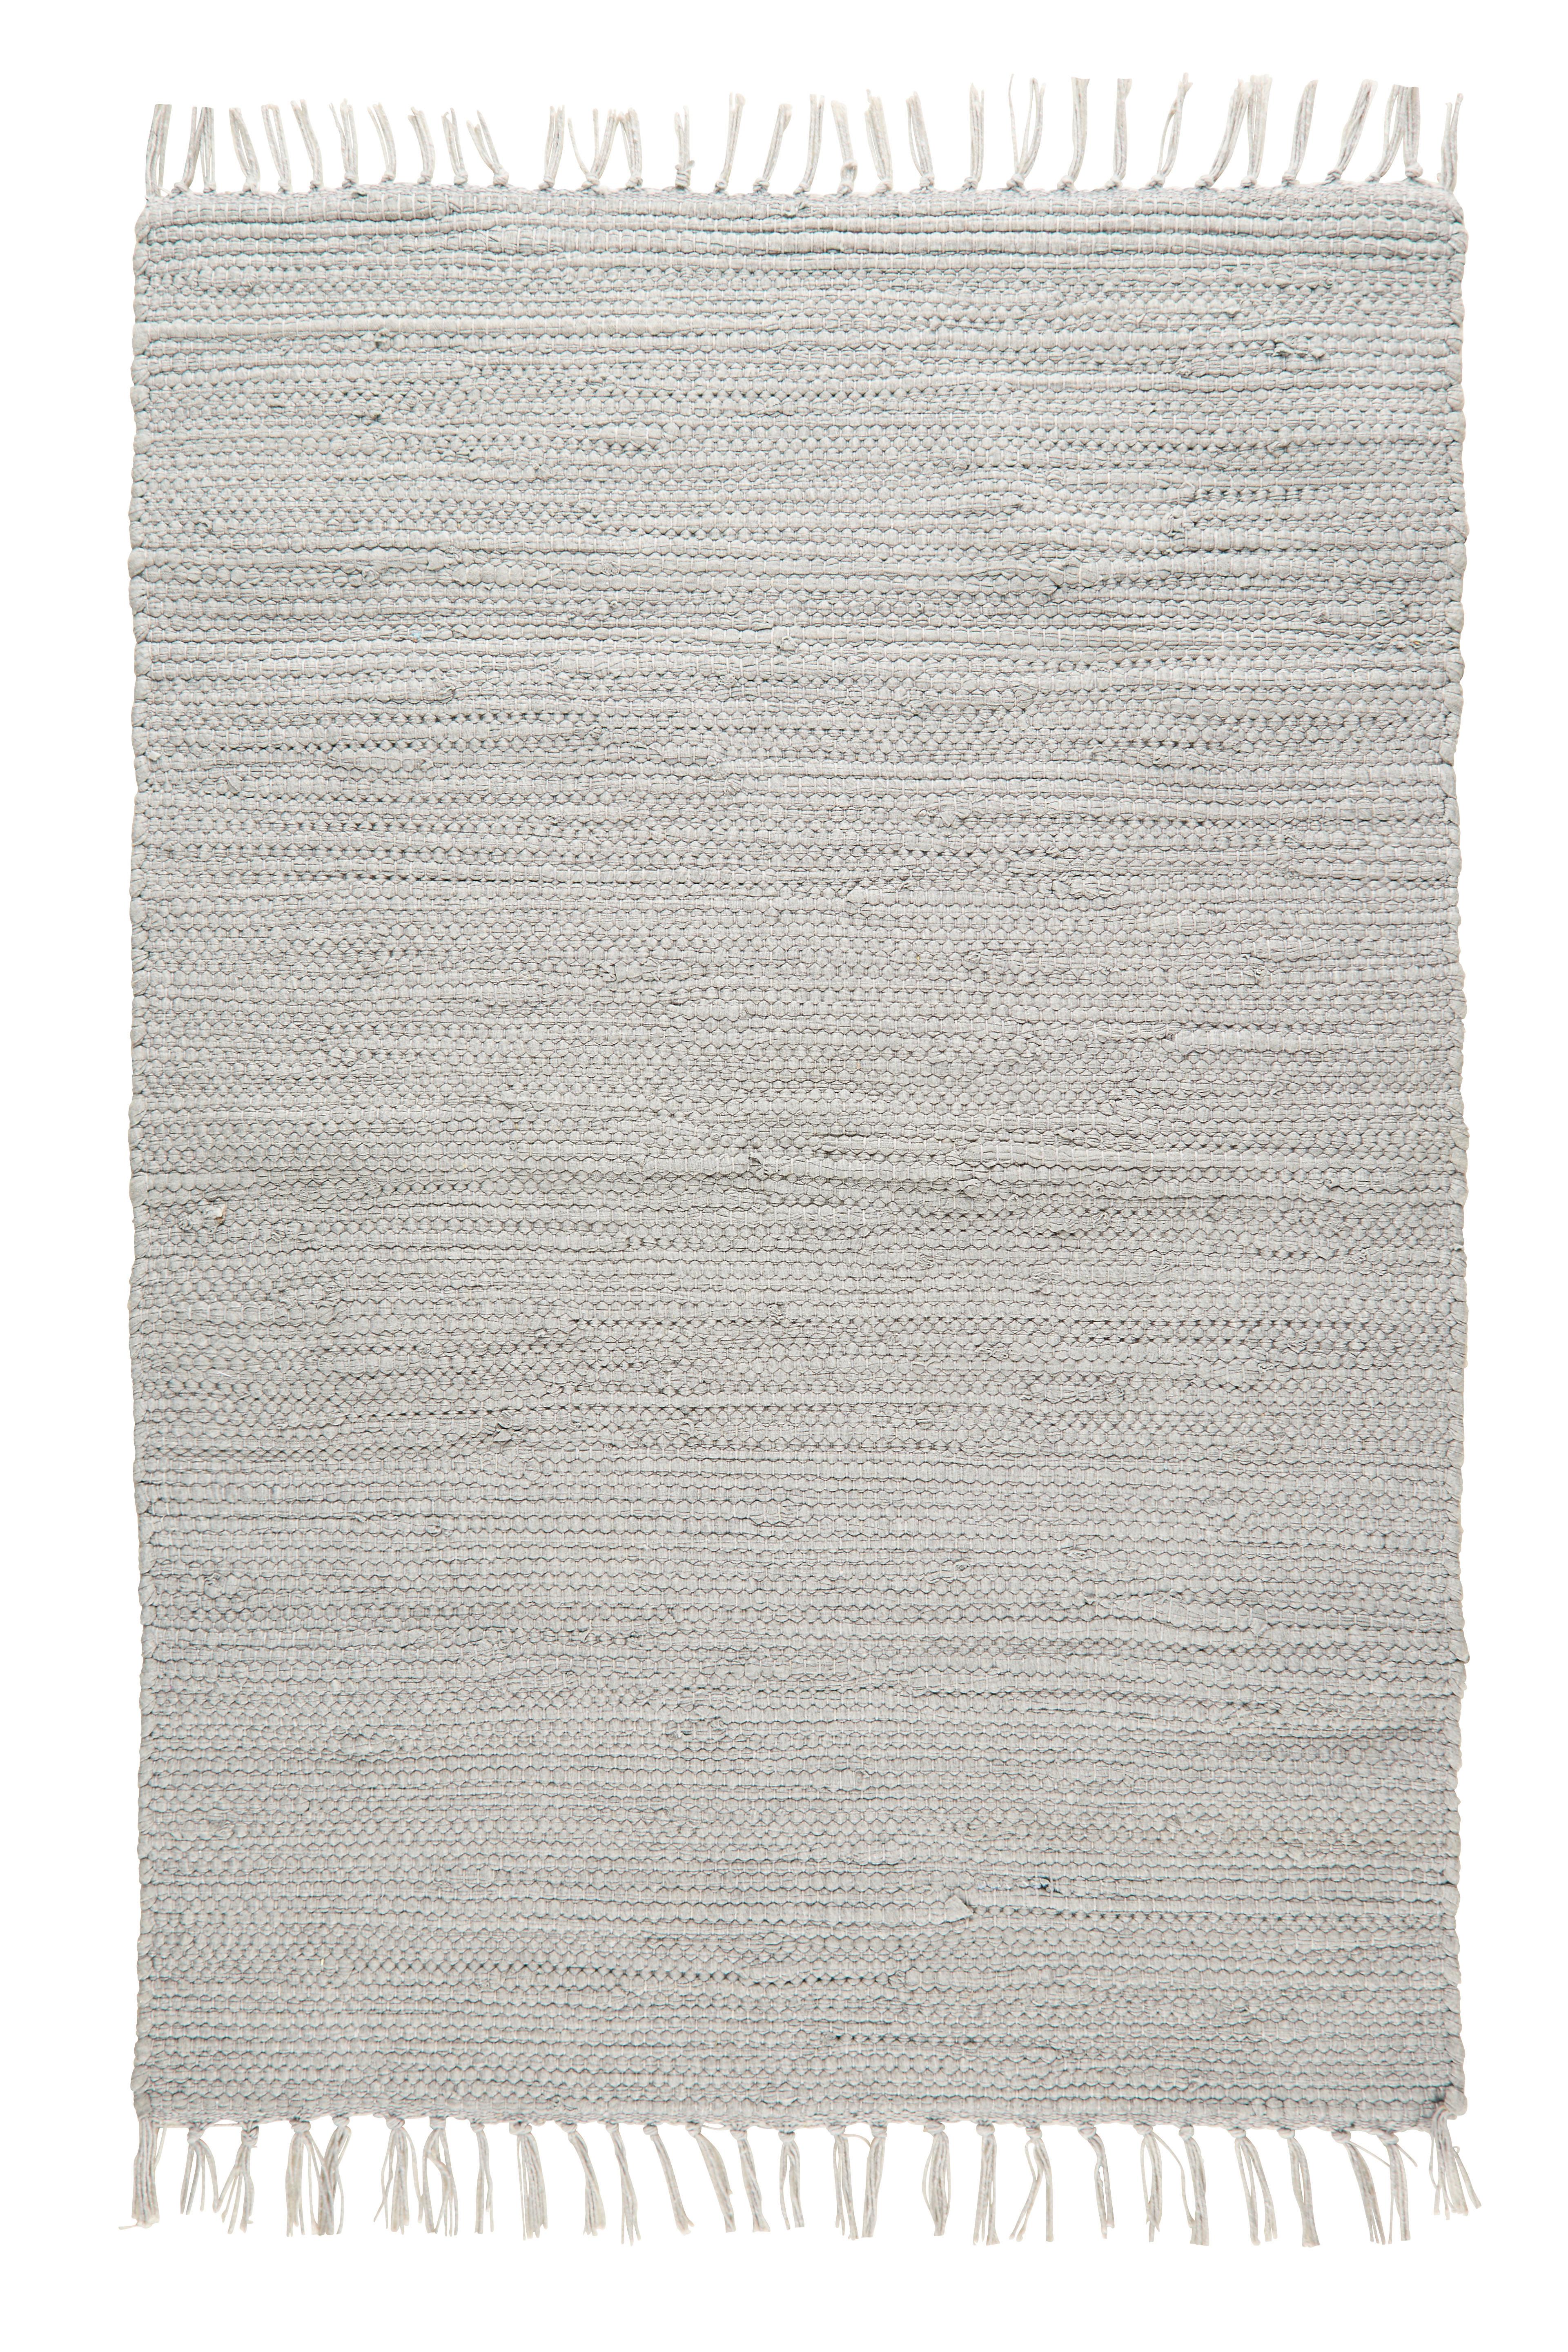 Tkaný Handričkový Koberec Julia 1, 60/90cm, Sivá - sivá, Romantický / Vidiecky, textil (60/90cm) - Modern Living